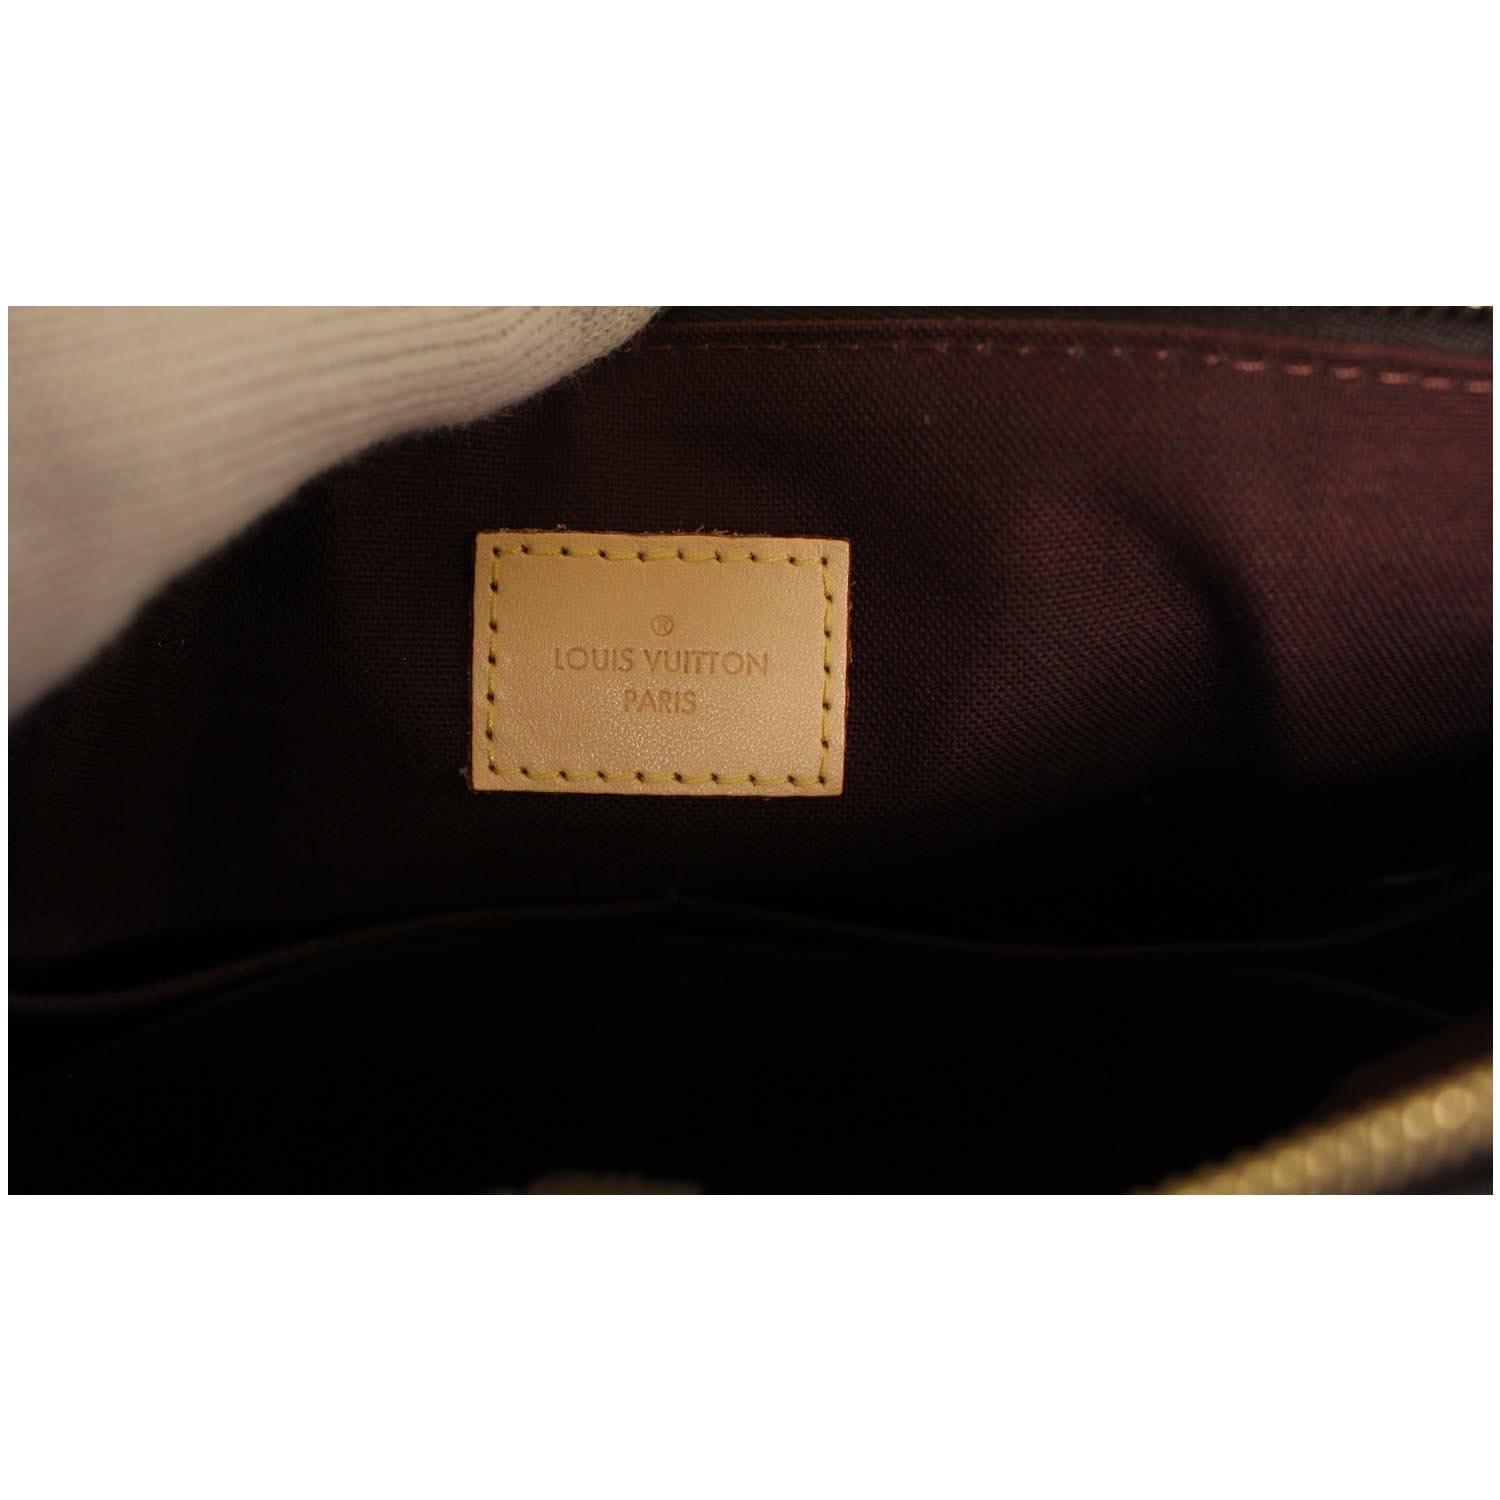 Authentic Louis Vuitton Monogram Rivoli PM M44543 2Way Shoulder Hand Bag  6477F